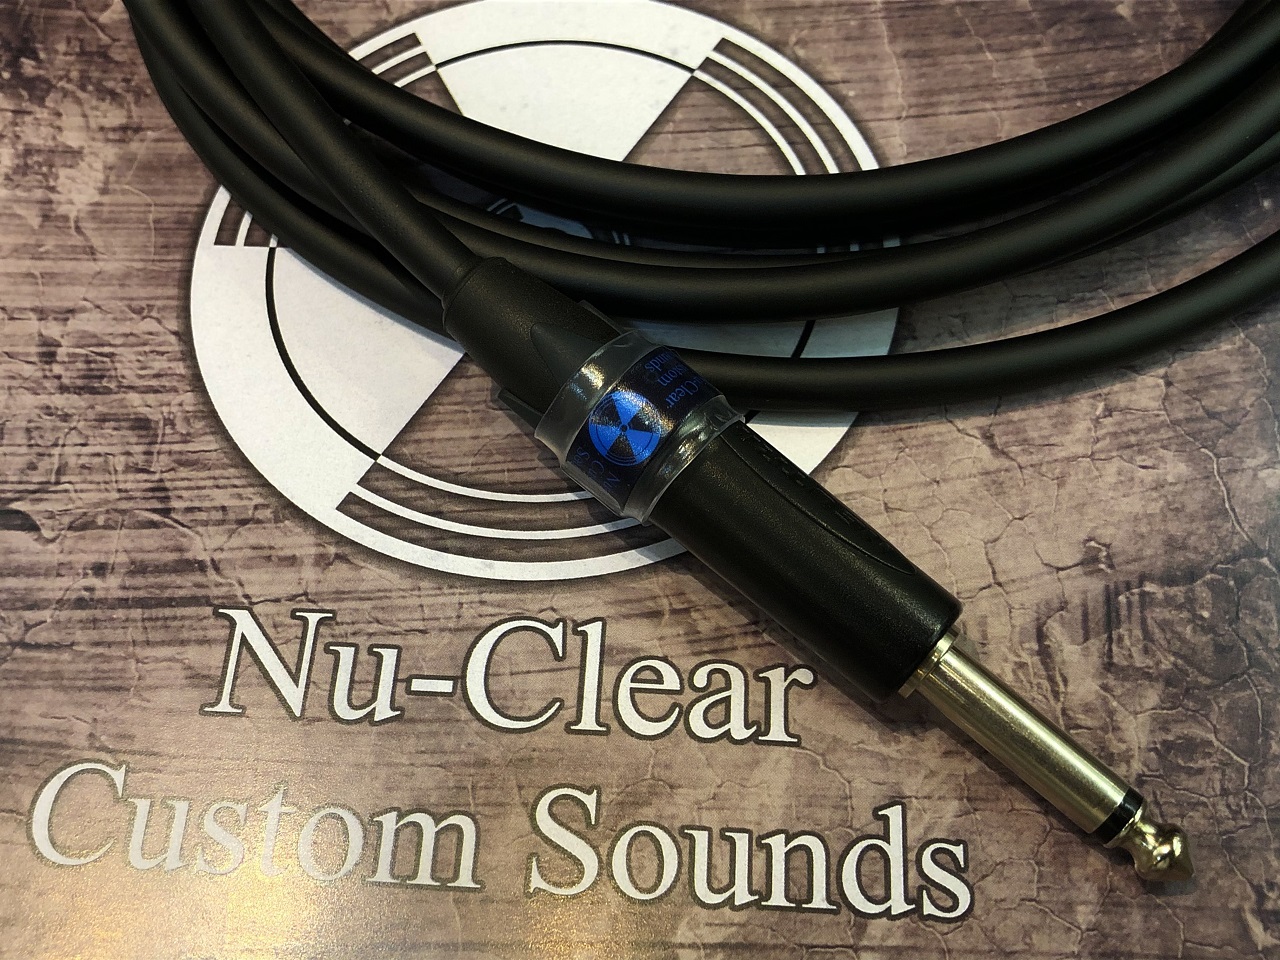 お取り寄せ商品 Nu-Clear Custom Sounds QUANTUM セール品 販売実績No.1 4.0mSS XC01